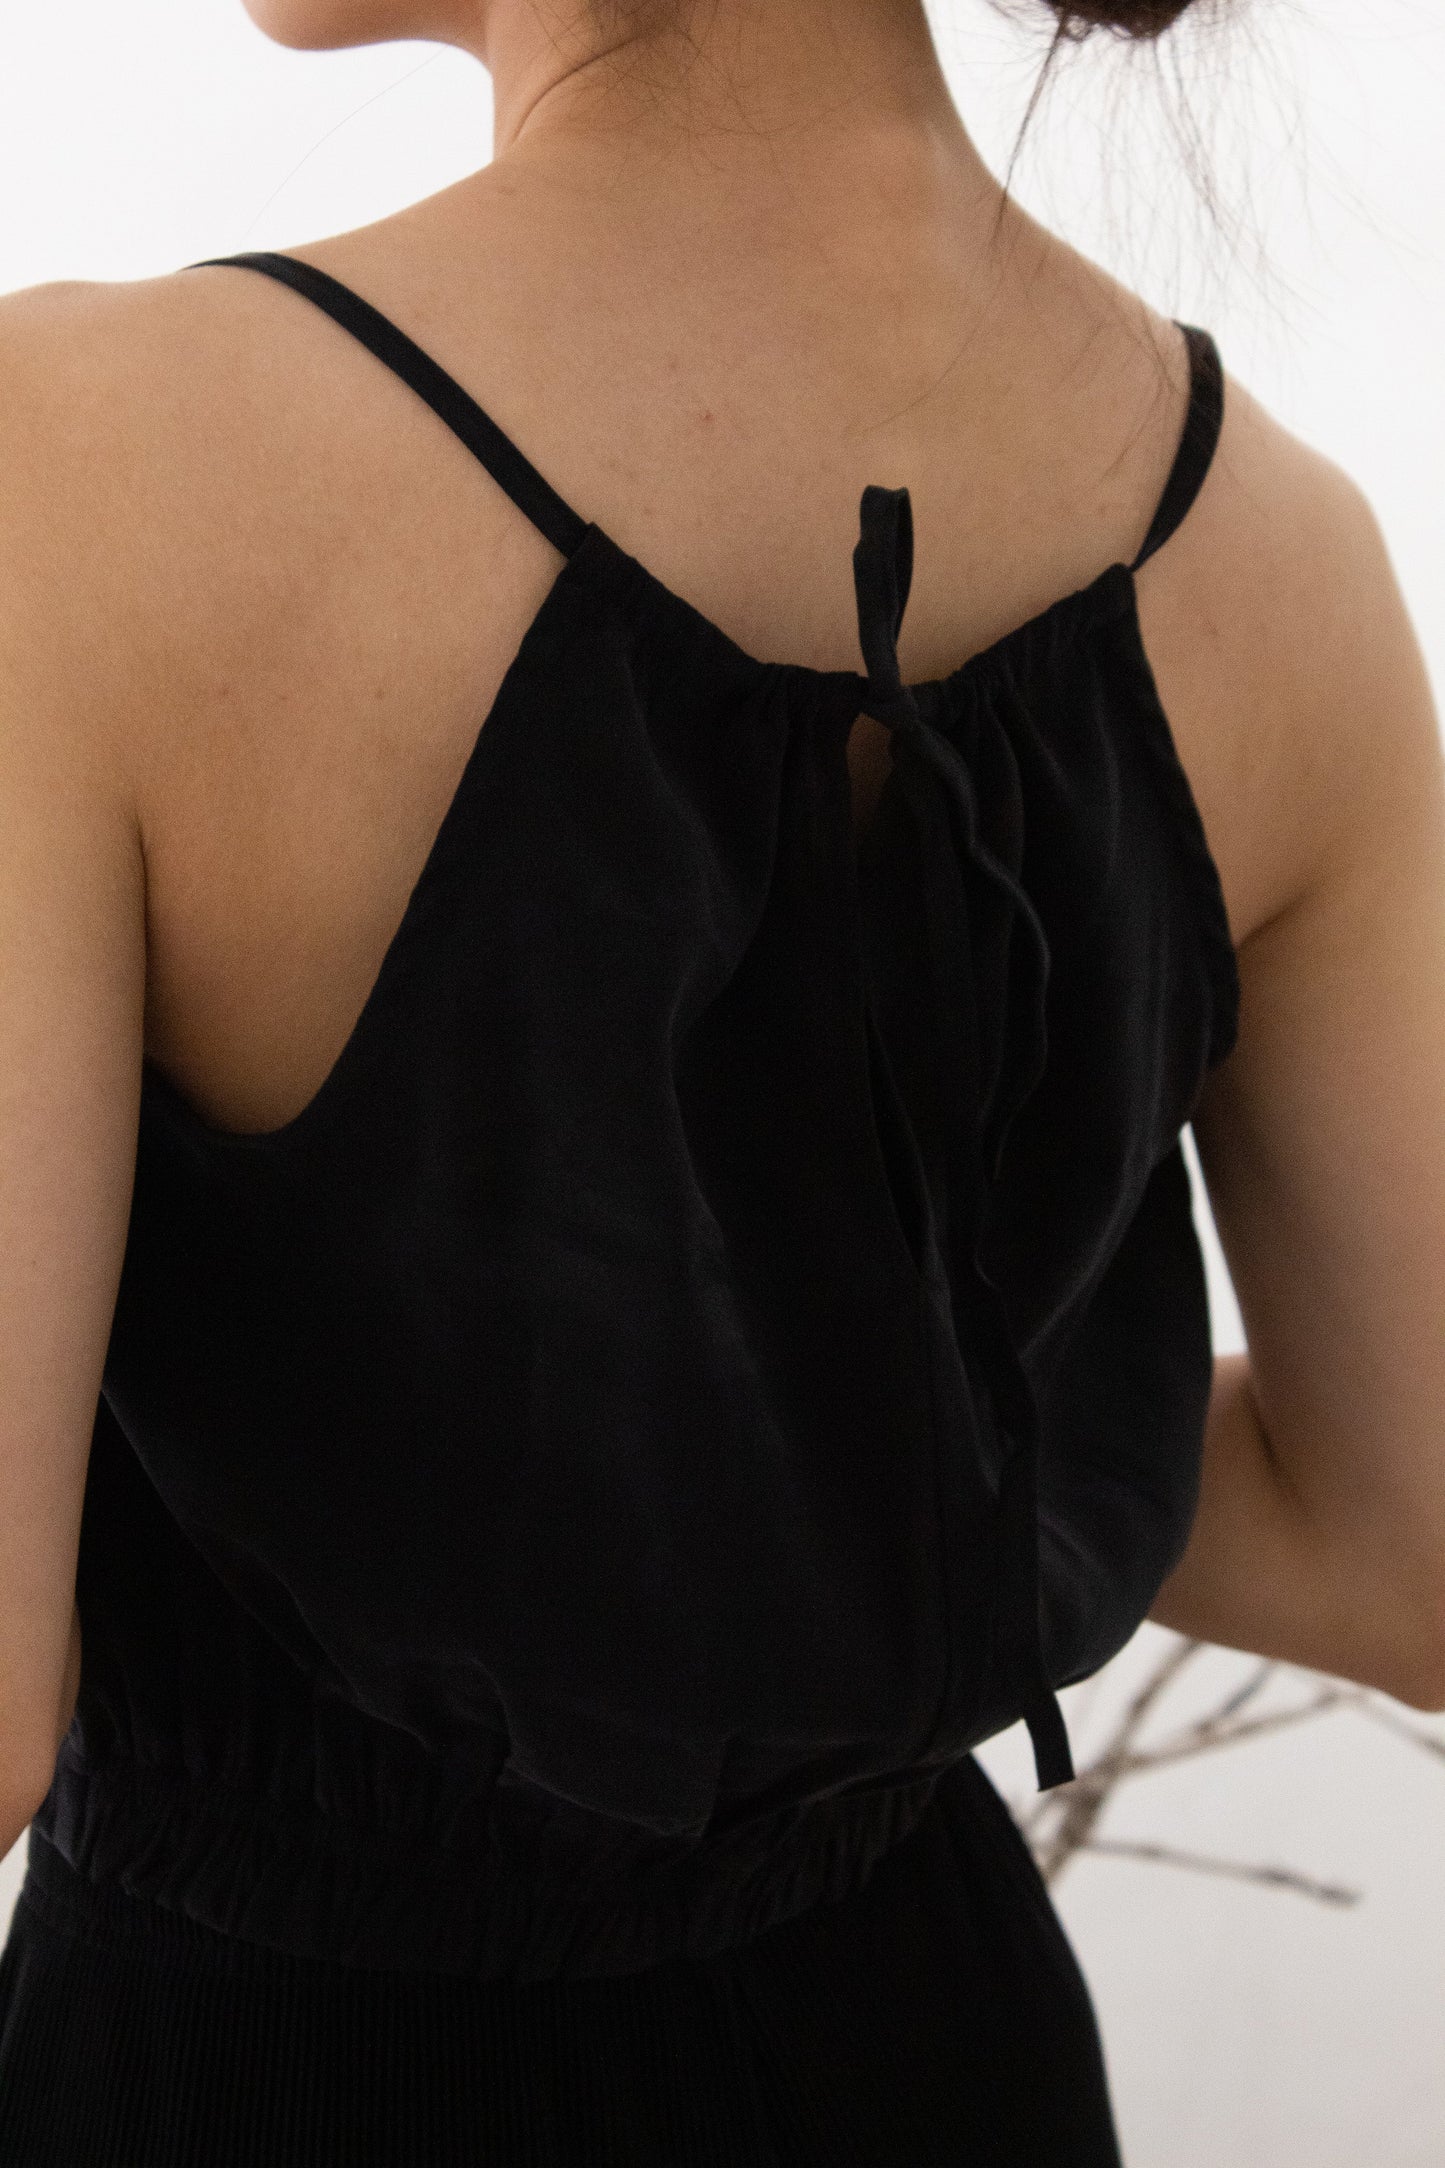 Small halter neck strap in classic black